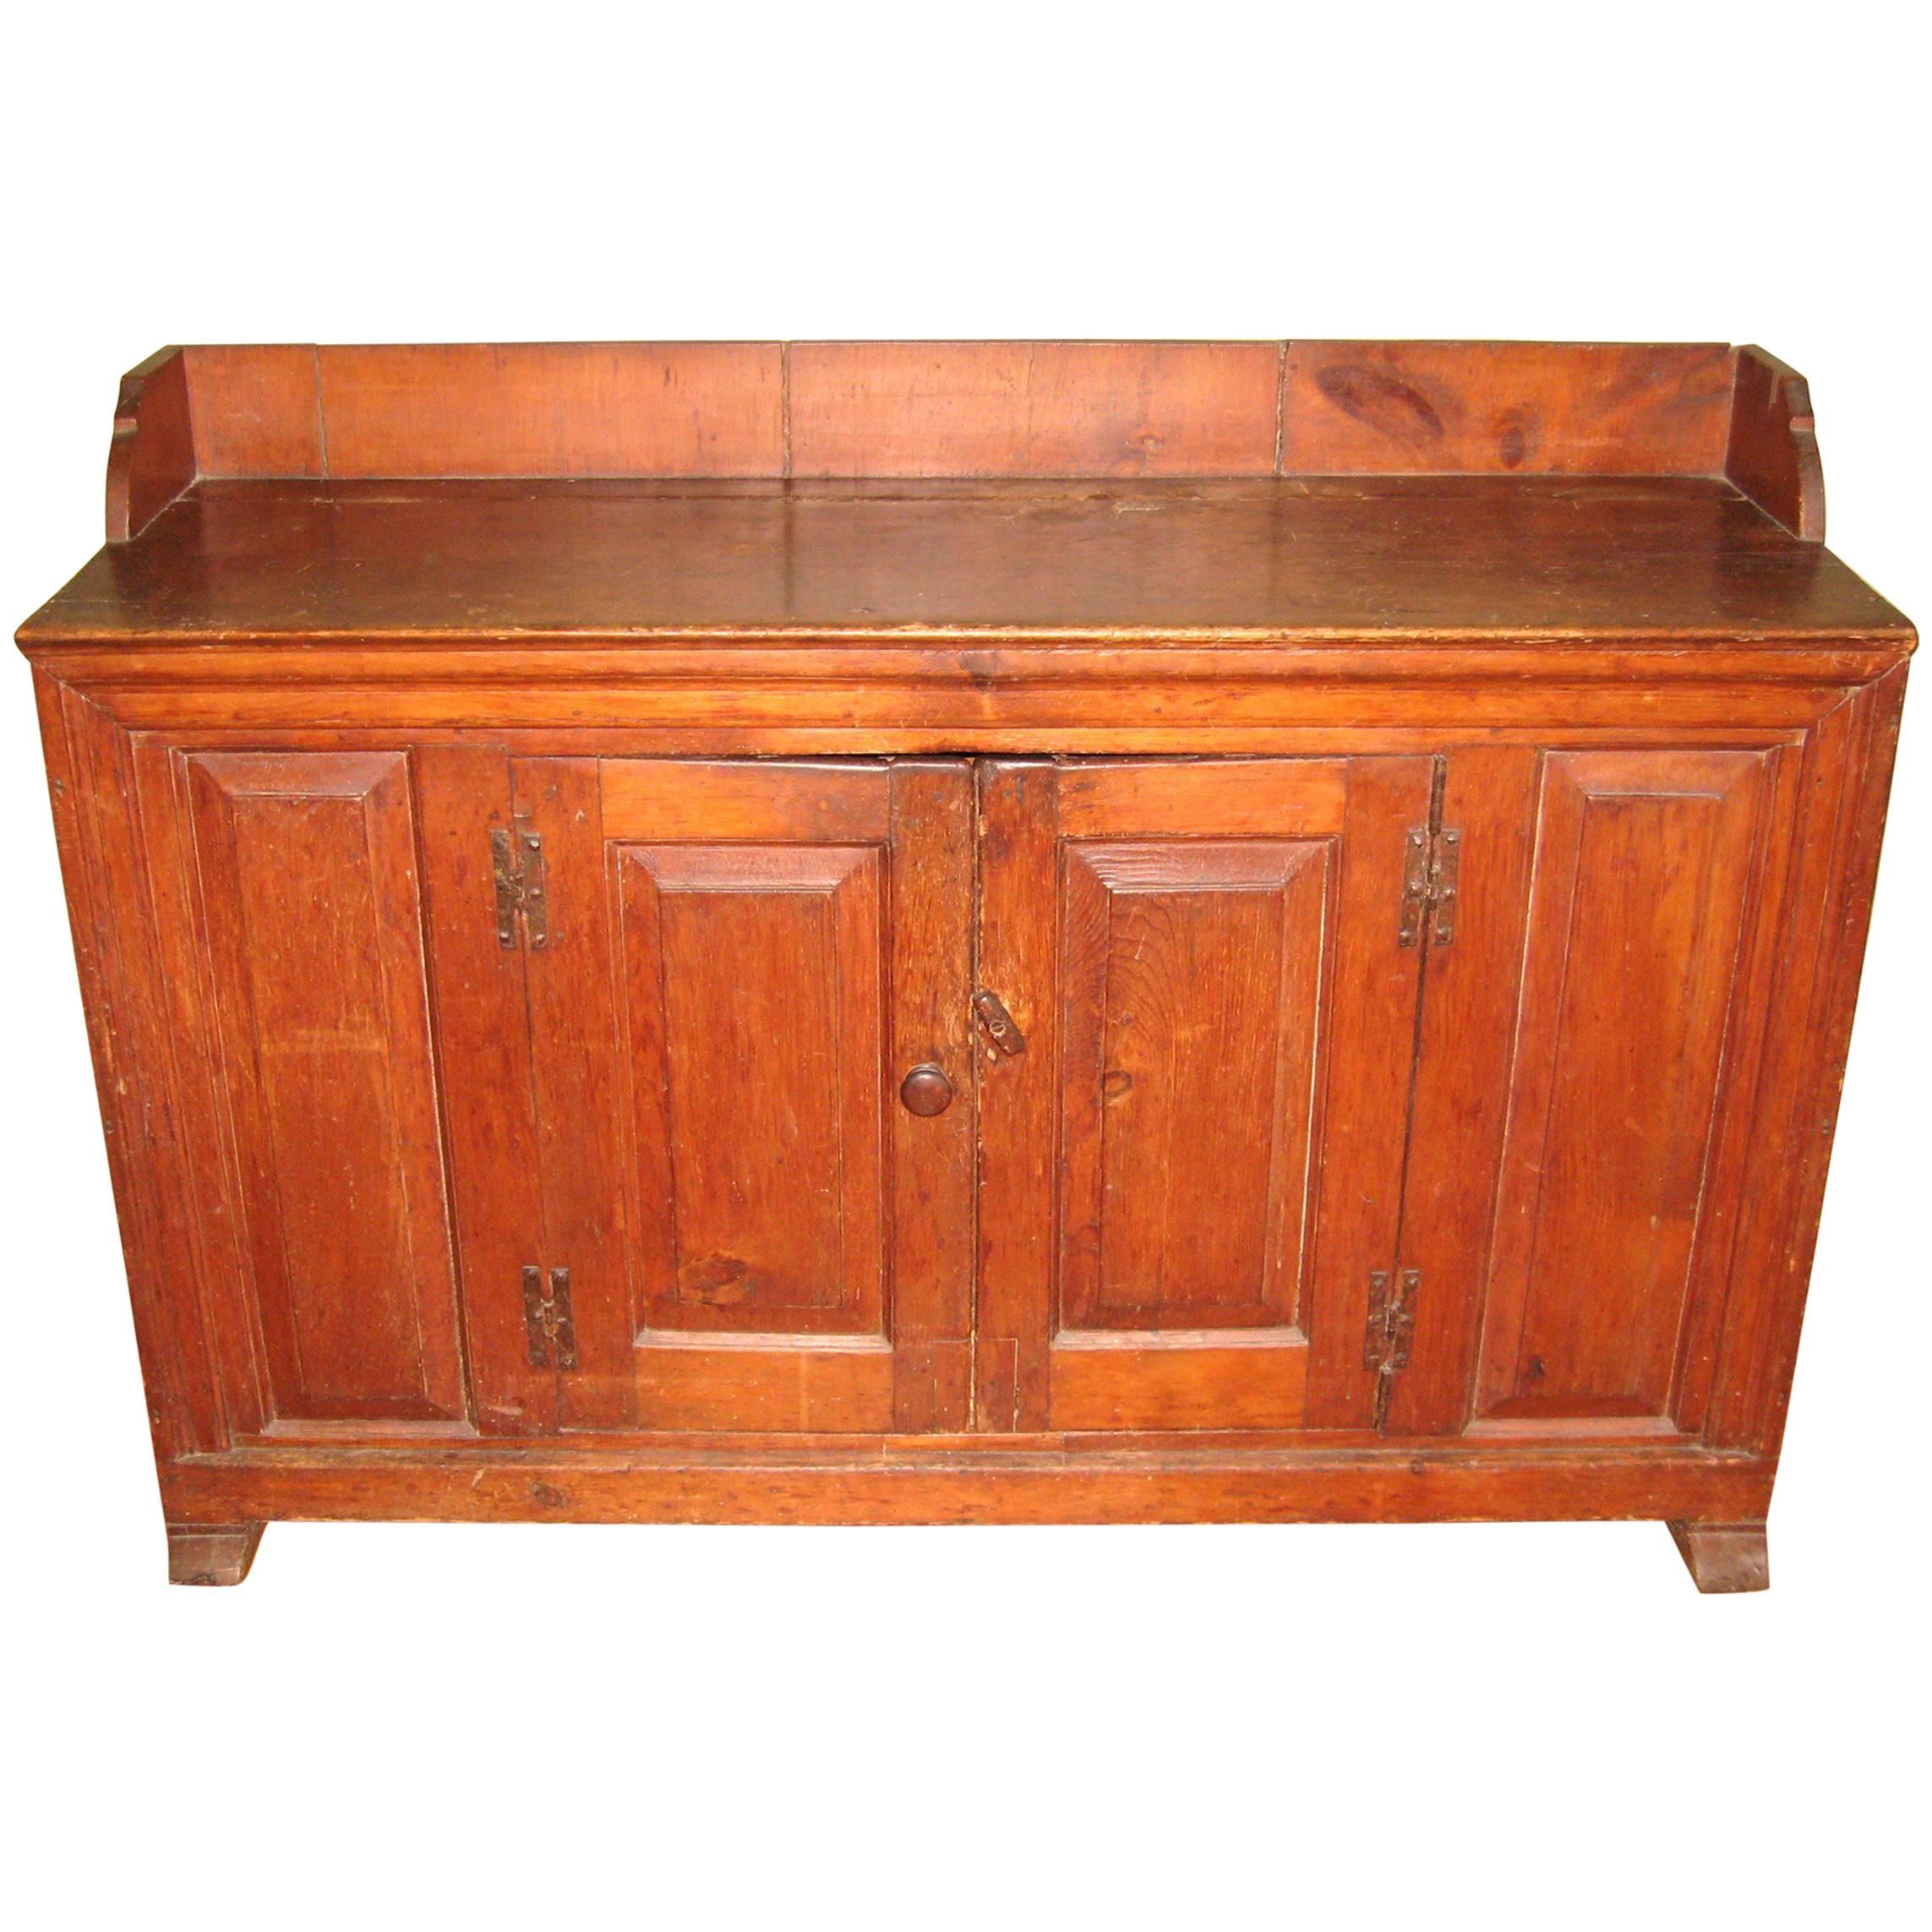 1770s Antique Farmhouse Pine Server Cabinet